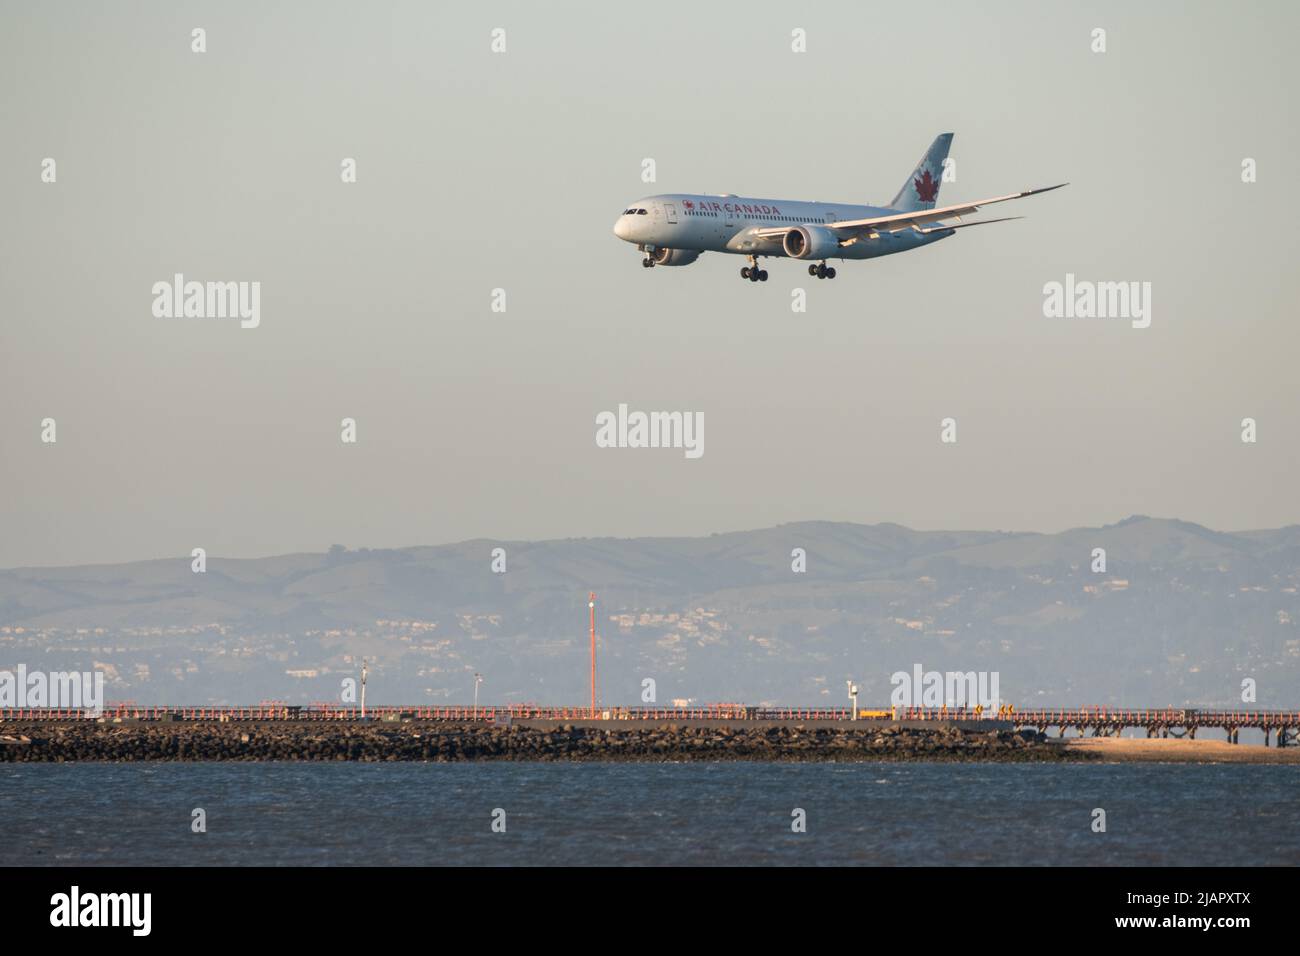 Bei einem Landeflug von Air Canada steigt das Flugzeug auf die Start- und Landebahn des internationalen Flughafens von San Francisco, Kalifornien, USA, ab. Stockfoto